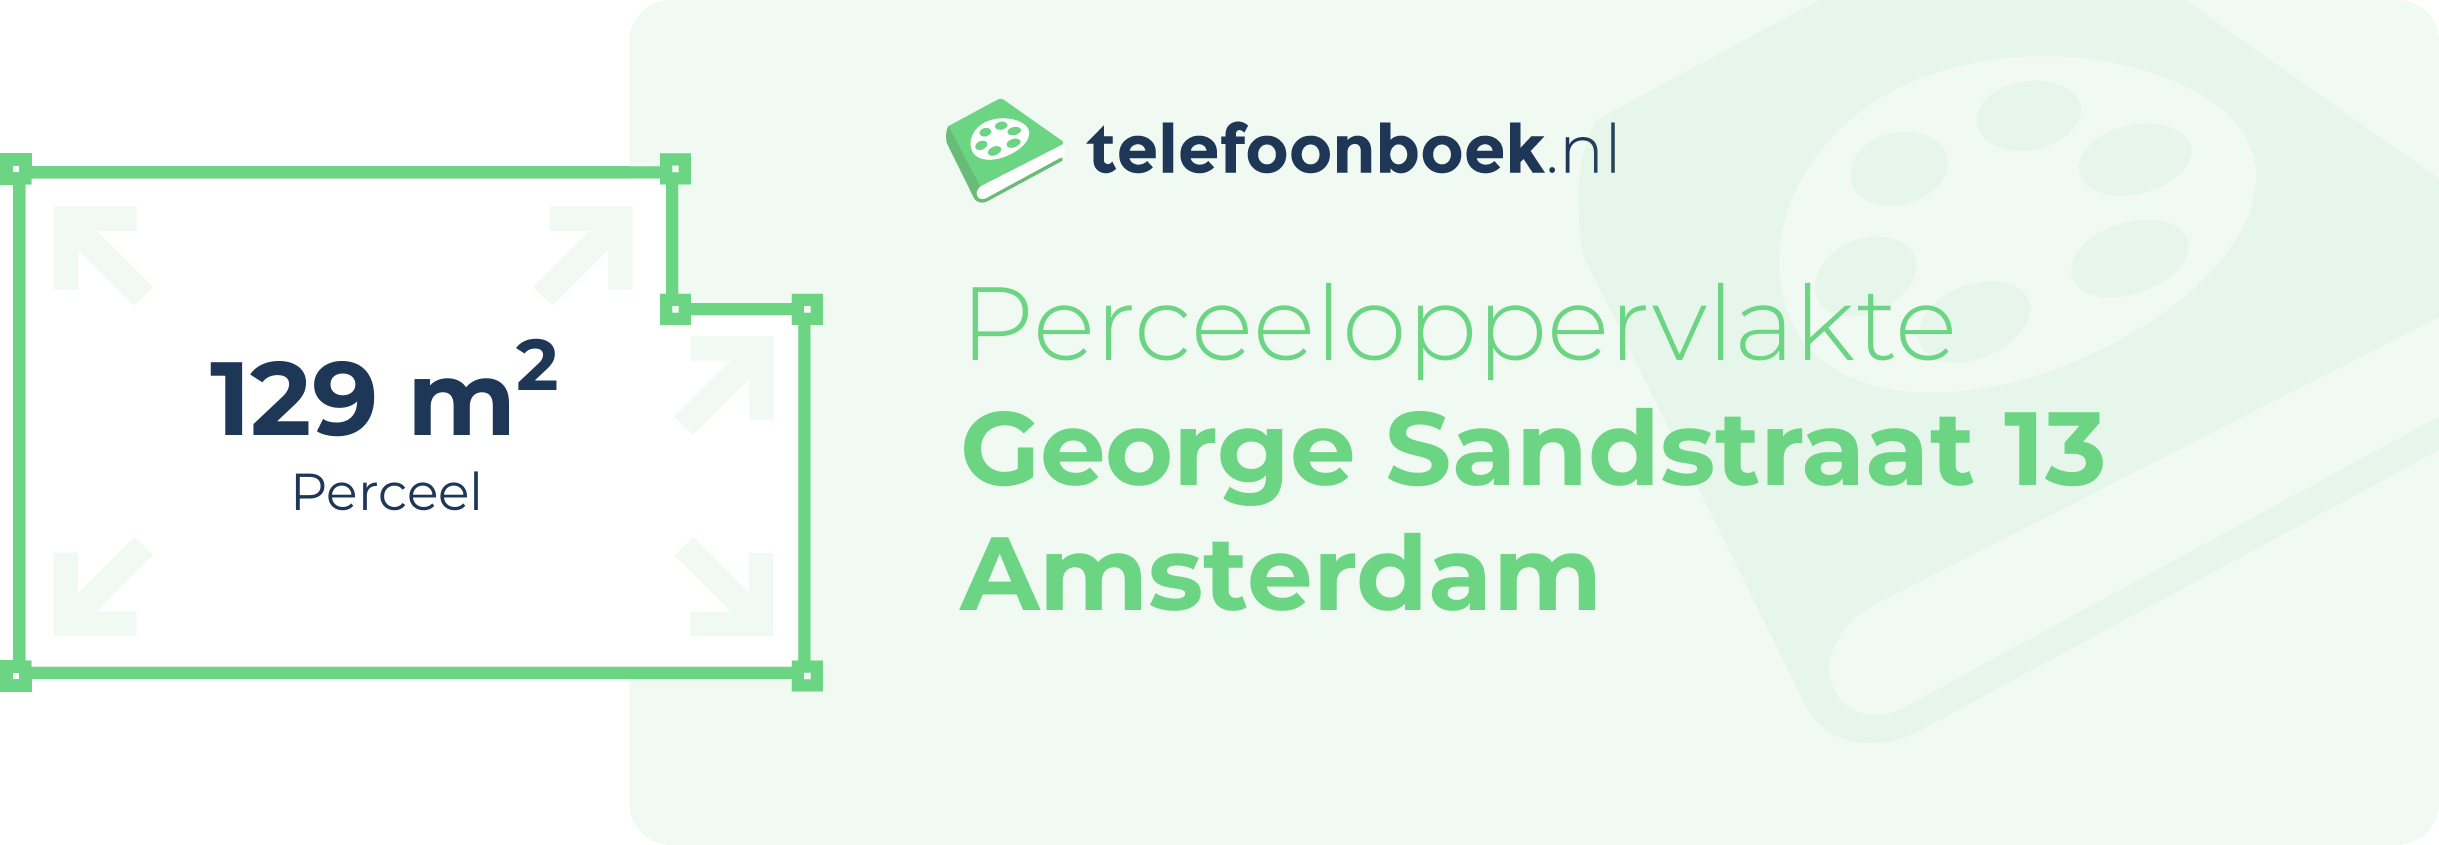 Perceeloppervlakte George Sandstraat 13 Amsterdam